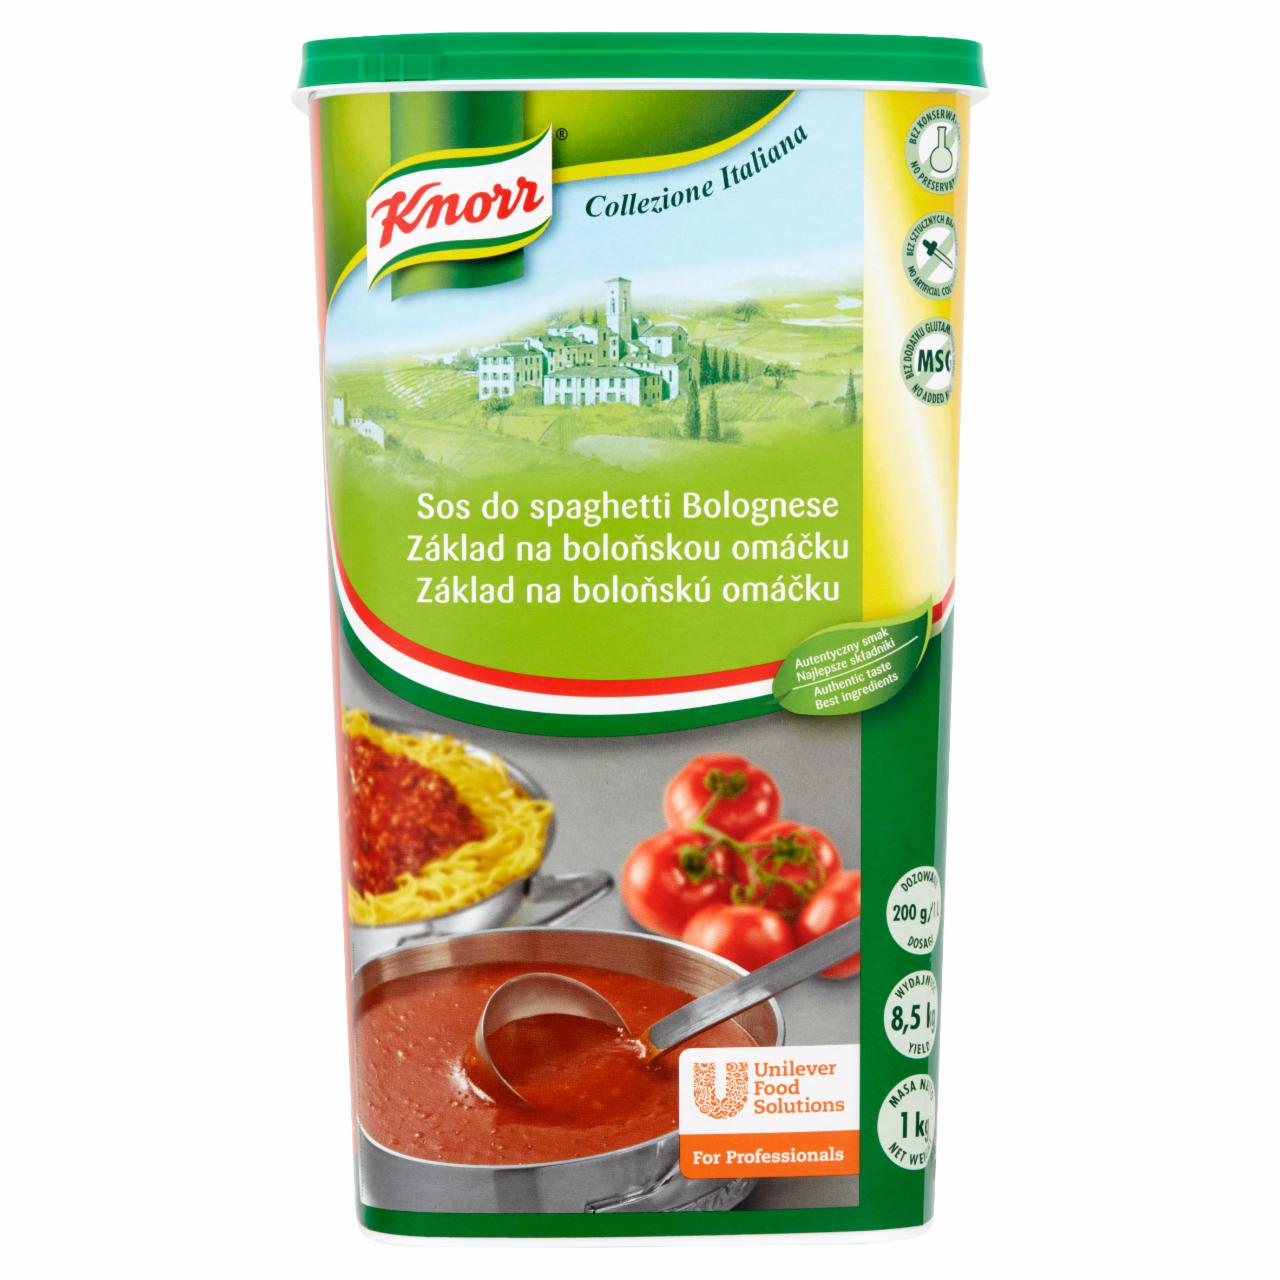 Zdjęcia - Knorr Sos do spaghetti Bolognese 1 kg